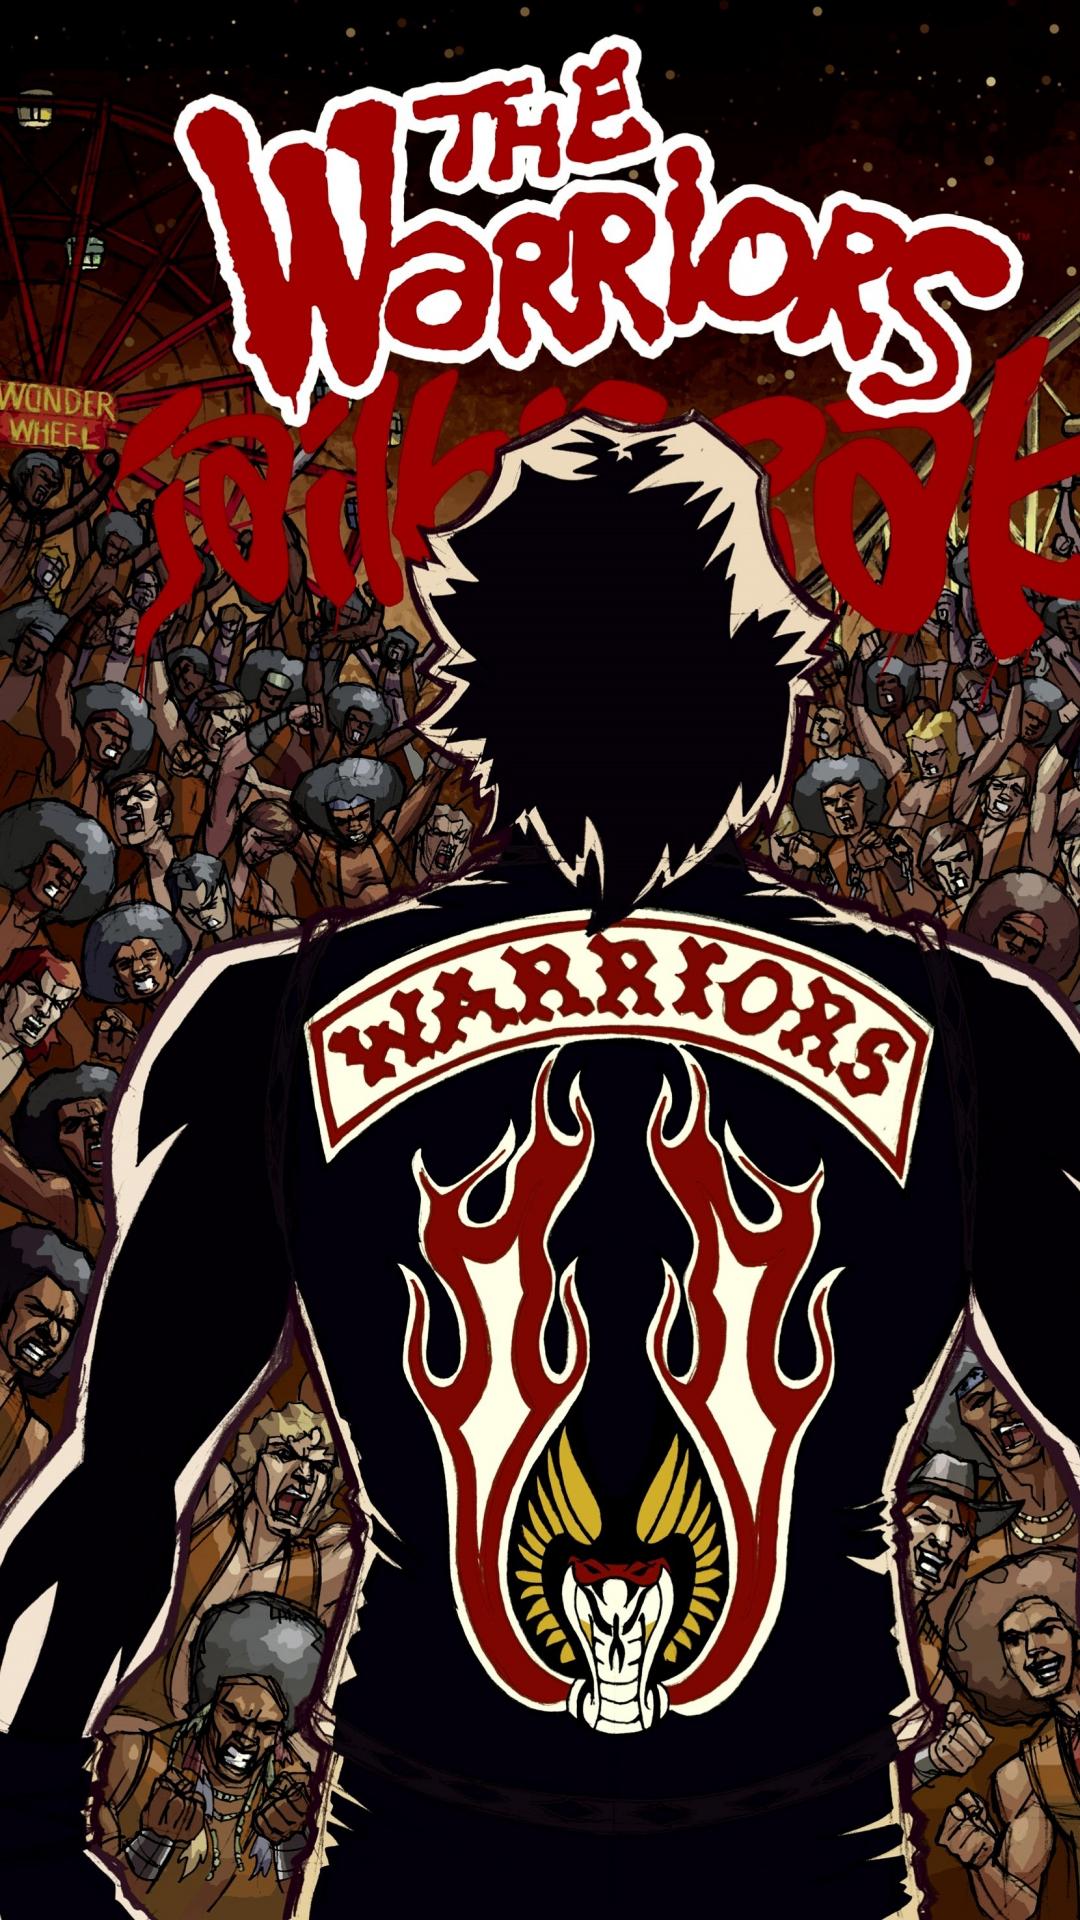 THE WARRIOR on Behance  Crazy wallpaper Retro gaming art Warrior movie